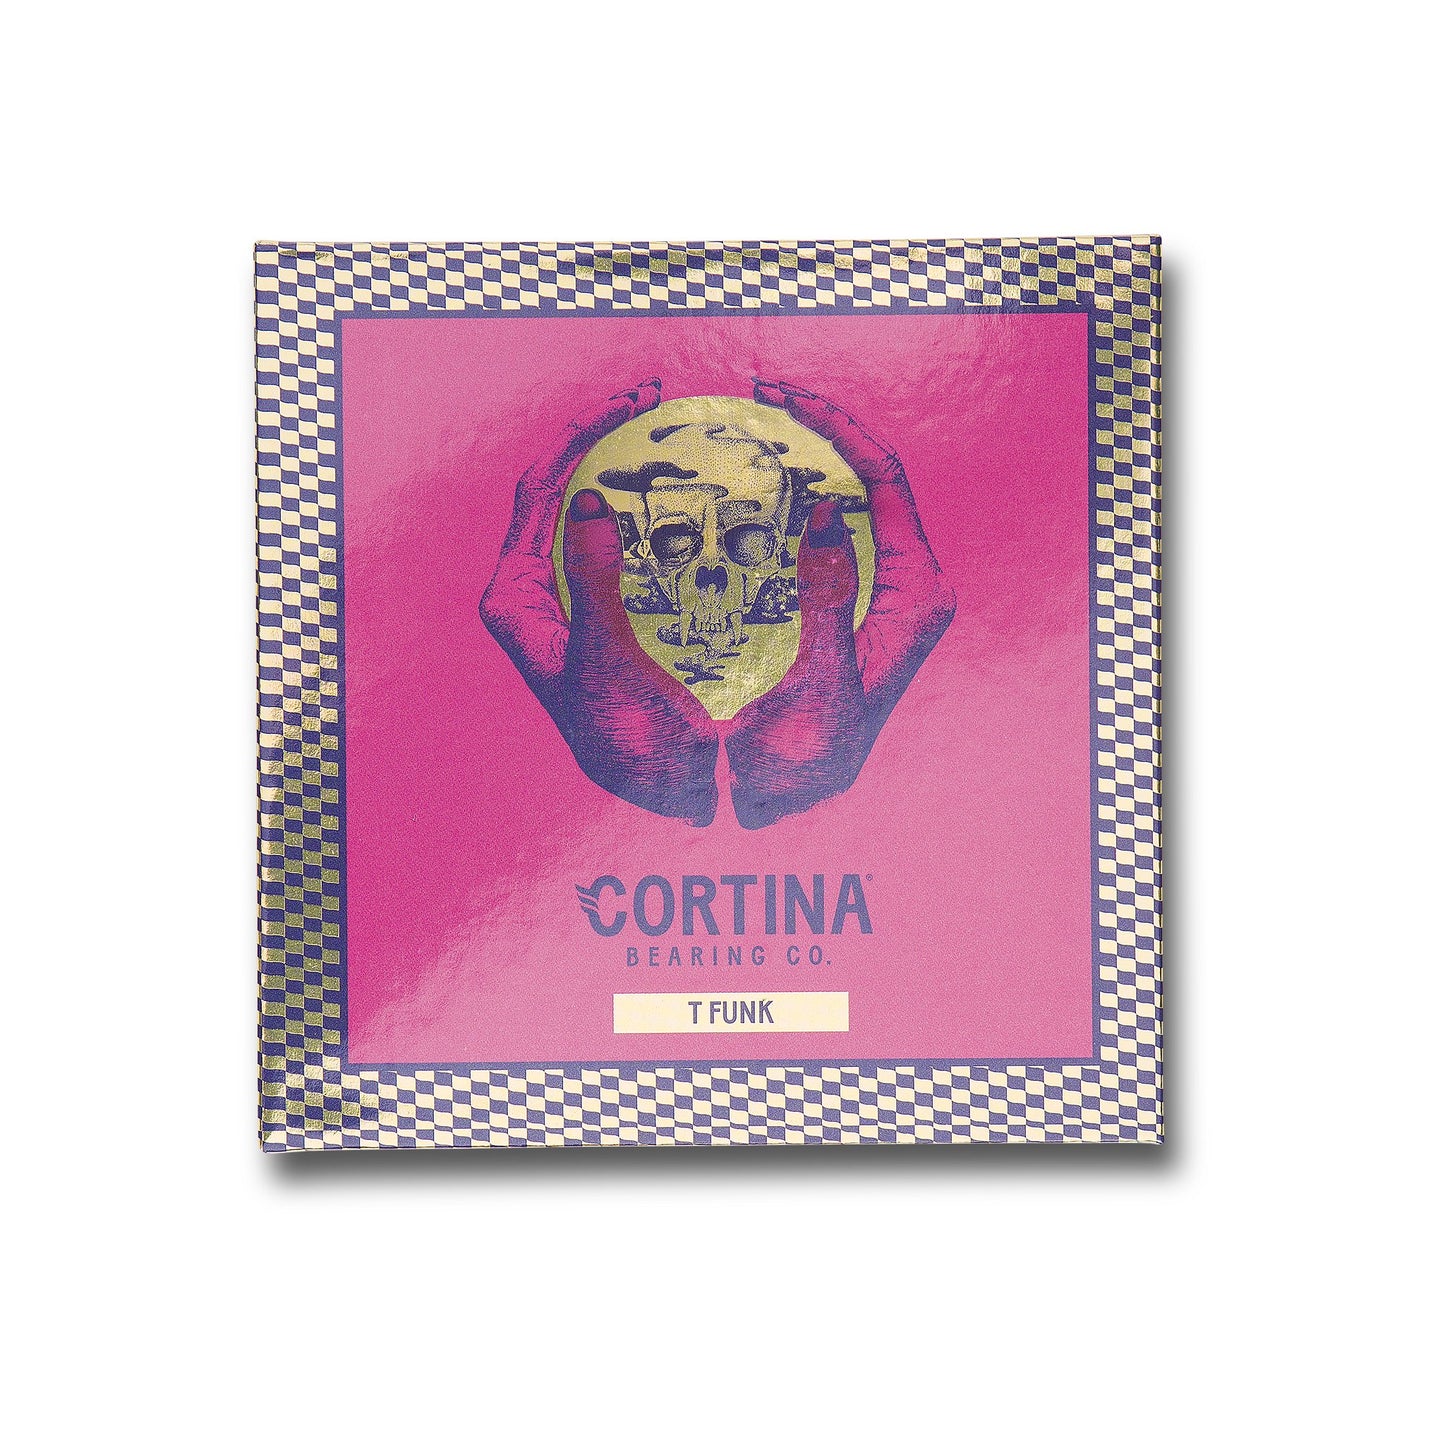 Cortina T Funk Signature Bearings